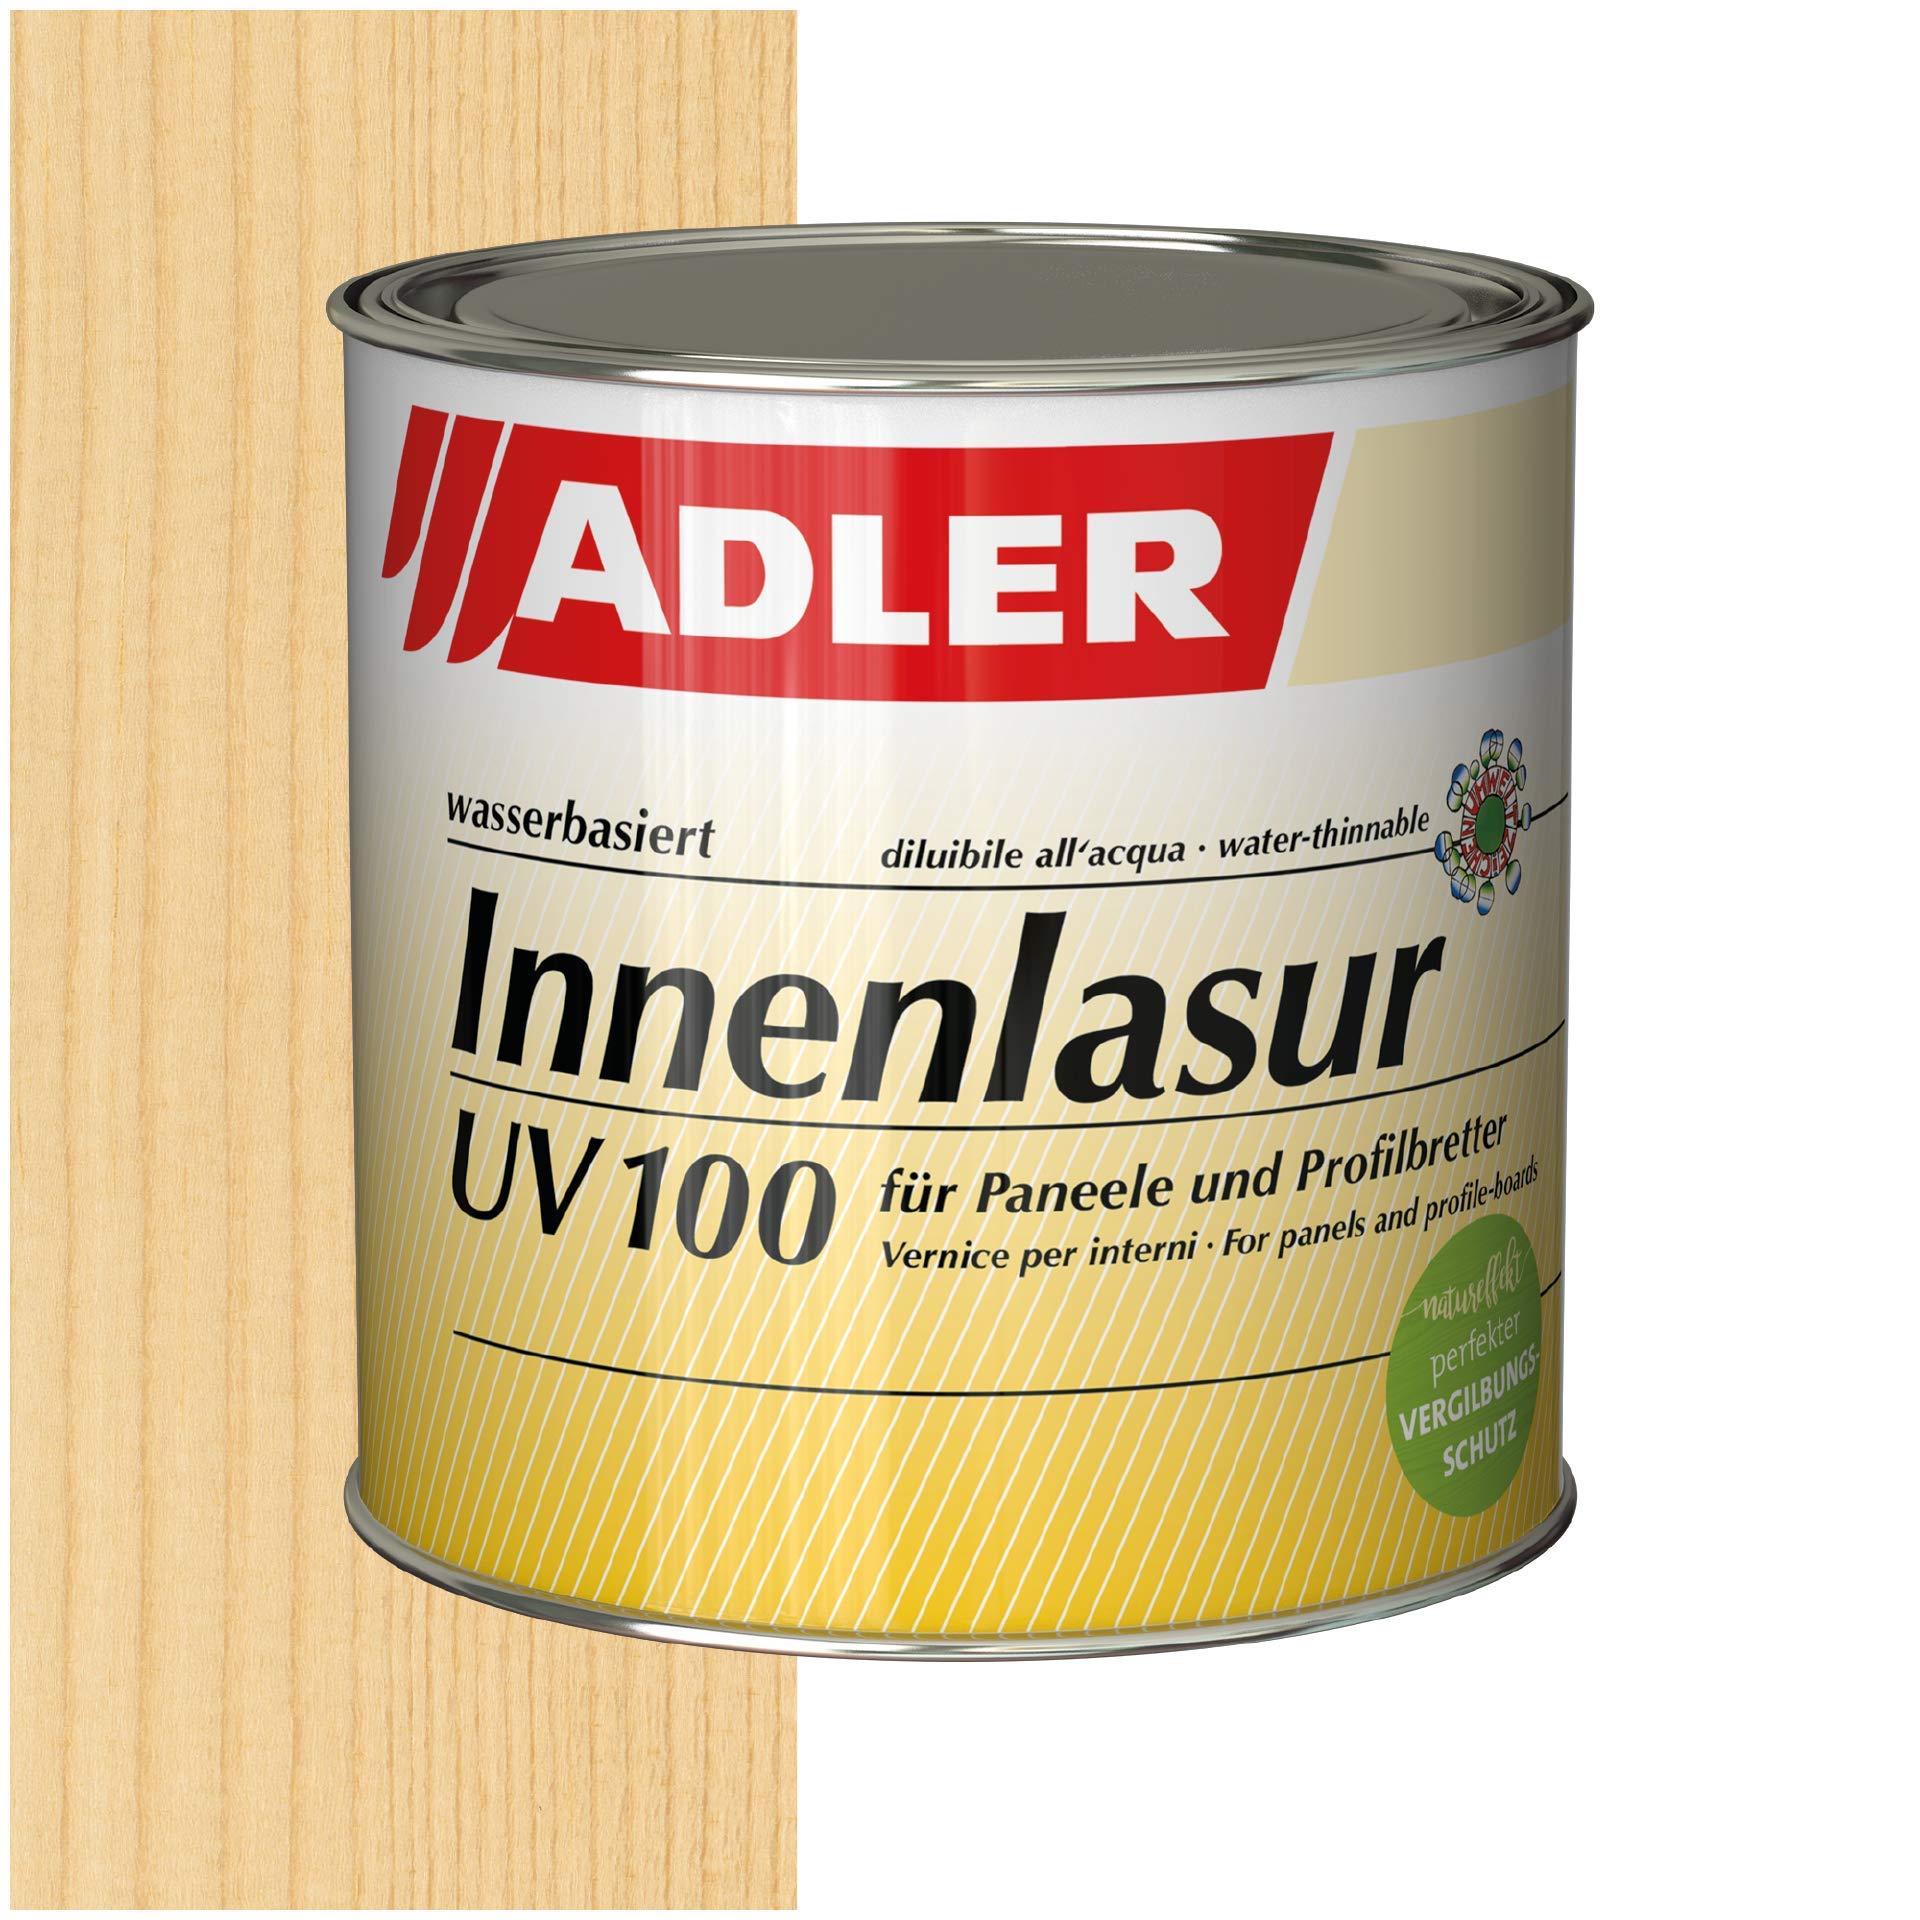 ADLER Innenlasur UV 100-2,5L - Wohngesunde Holzlasur farblos für innen mit speziellem Vergilbungsschutz, atmungsaktive Wohnraumlasur auf Wasserbasis